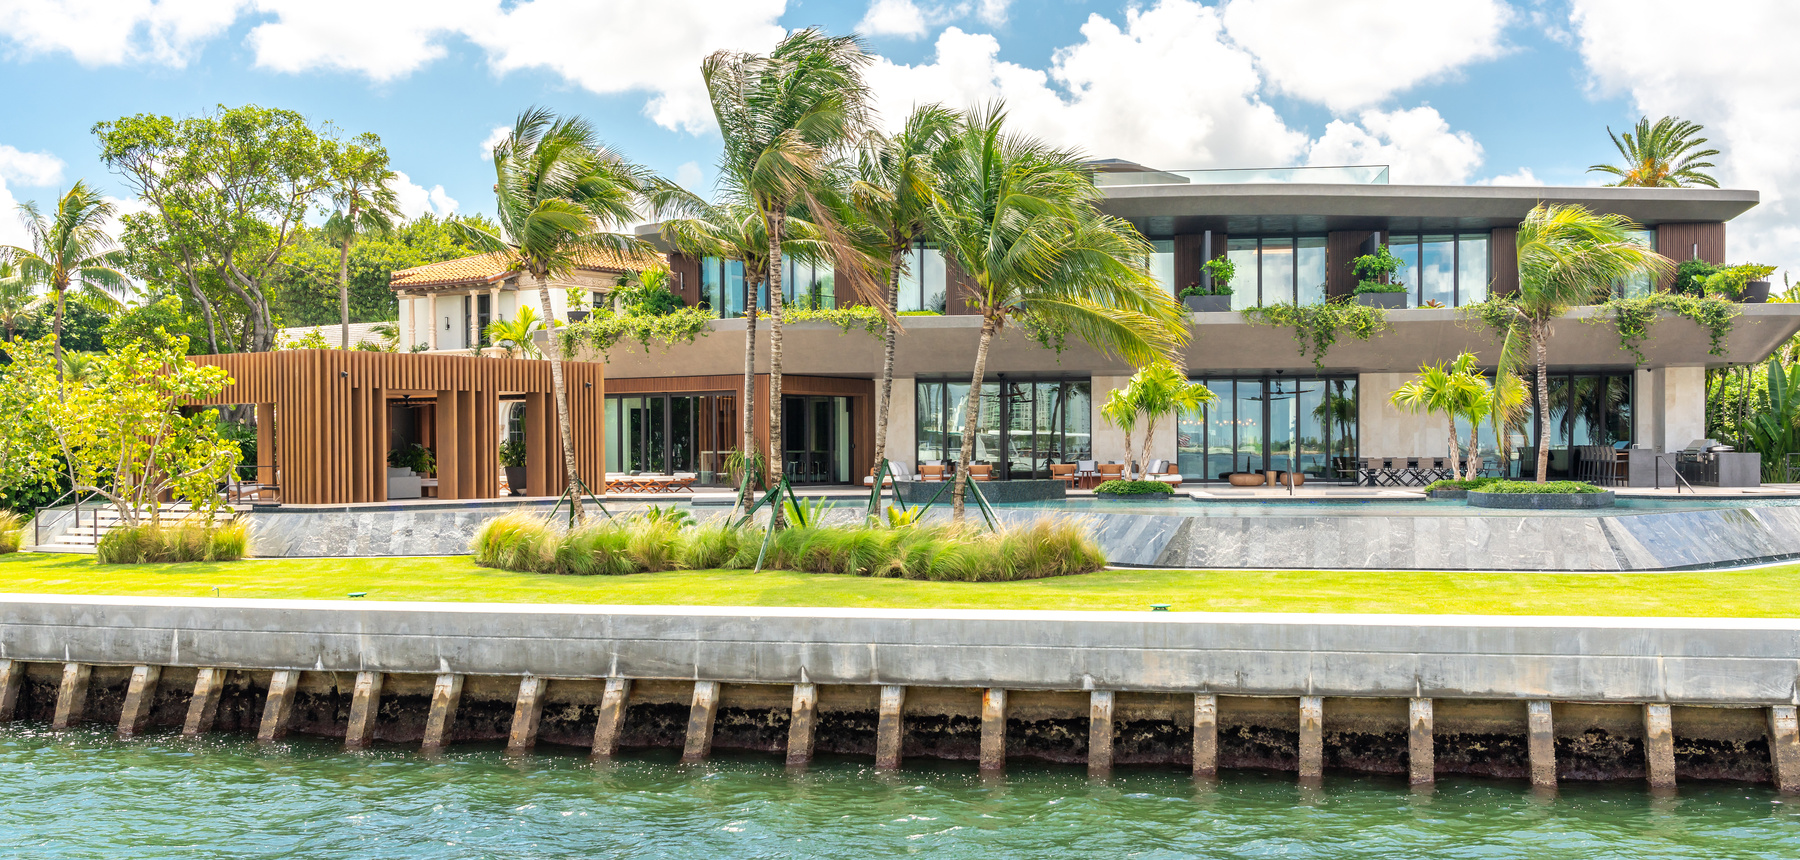 Luxurious Mansion in Miami Beach, Florida, USA